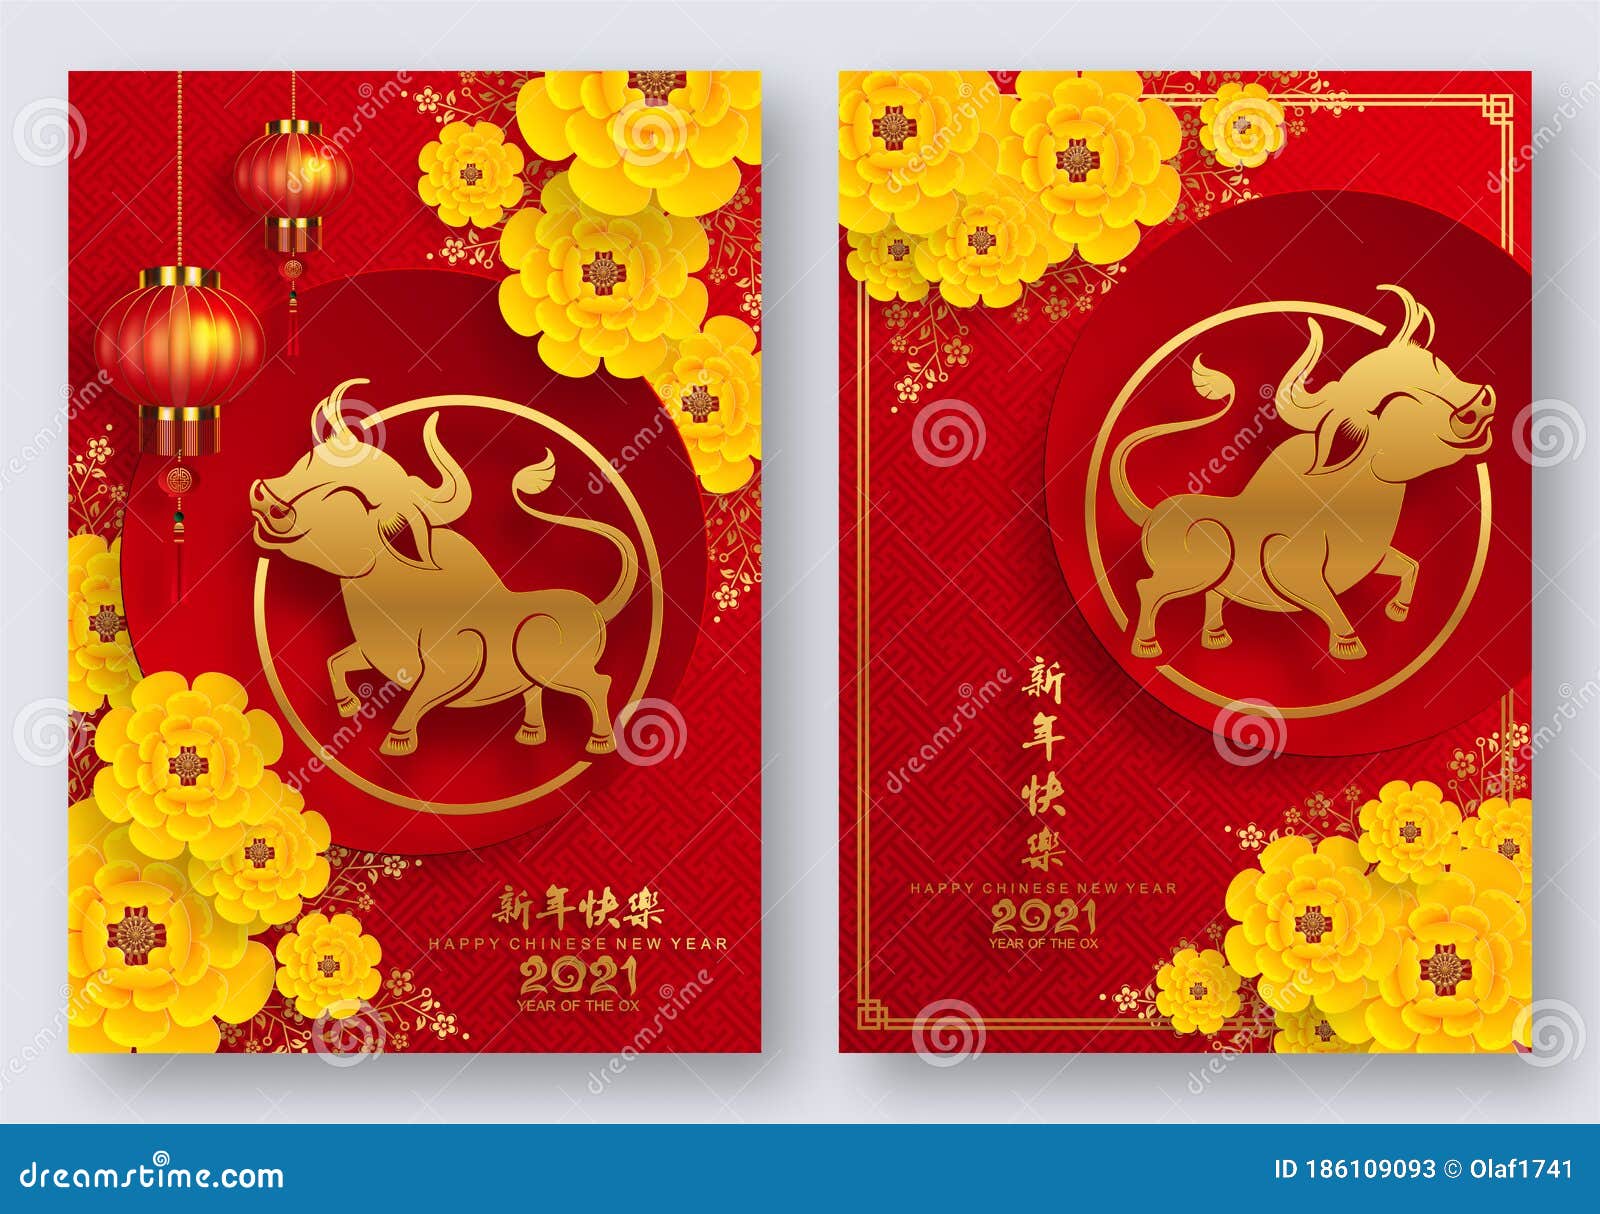 Lyckliga kinesiska år 2021. Kinesiskt nyår 2021 av rödpapper, snittblomma och asiatiska element med hantverksstil på underjordiska översättningar : lycklig kinesisk nyår 2021